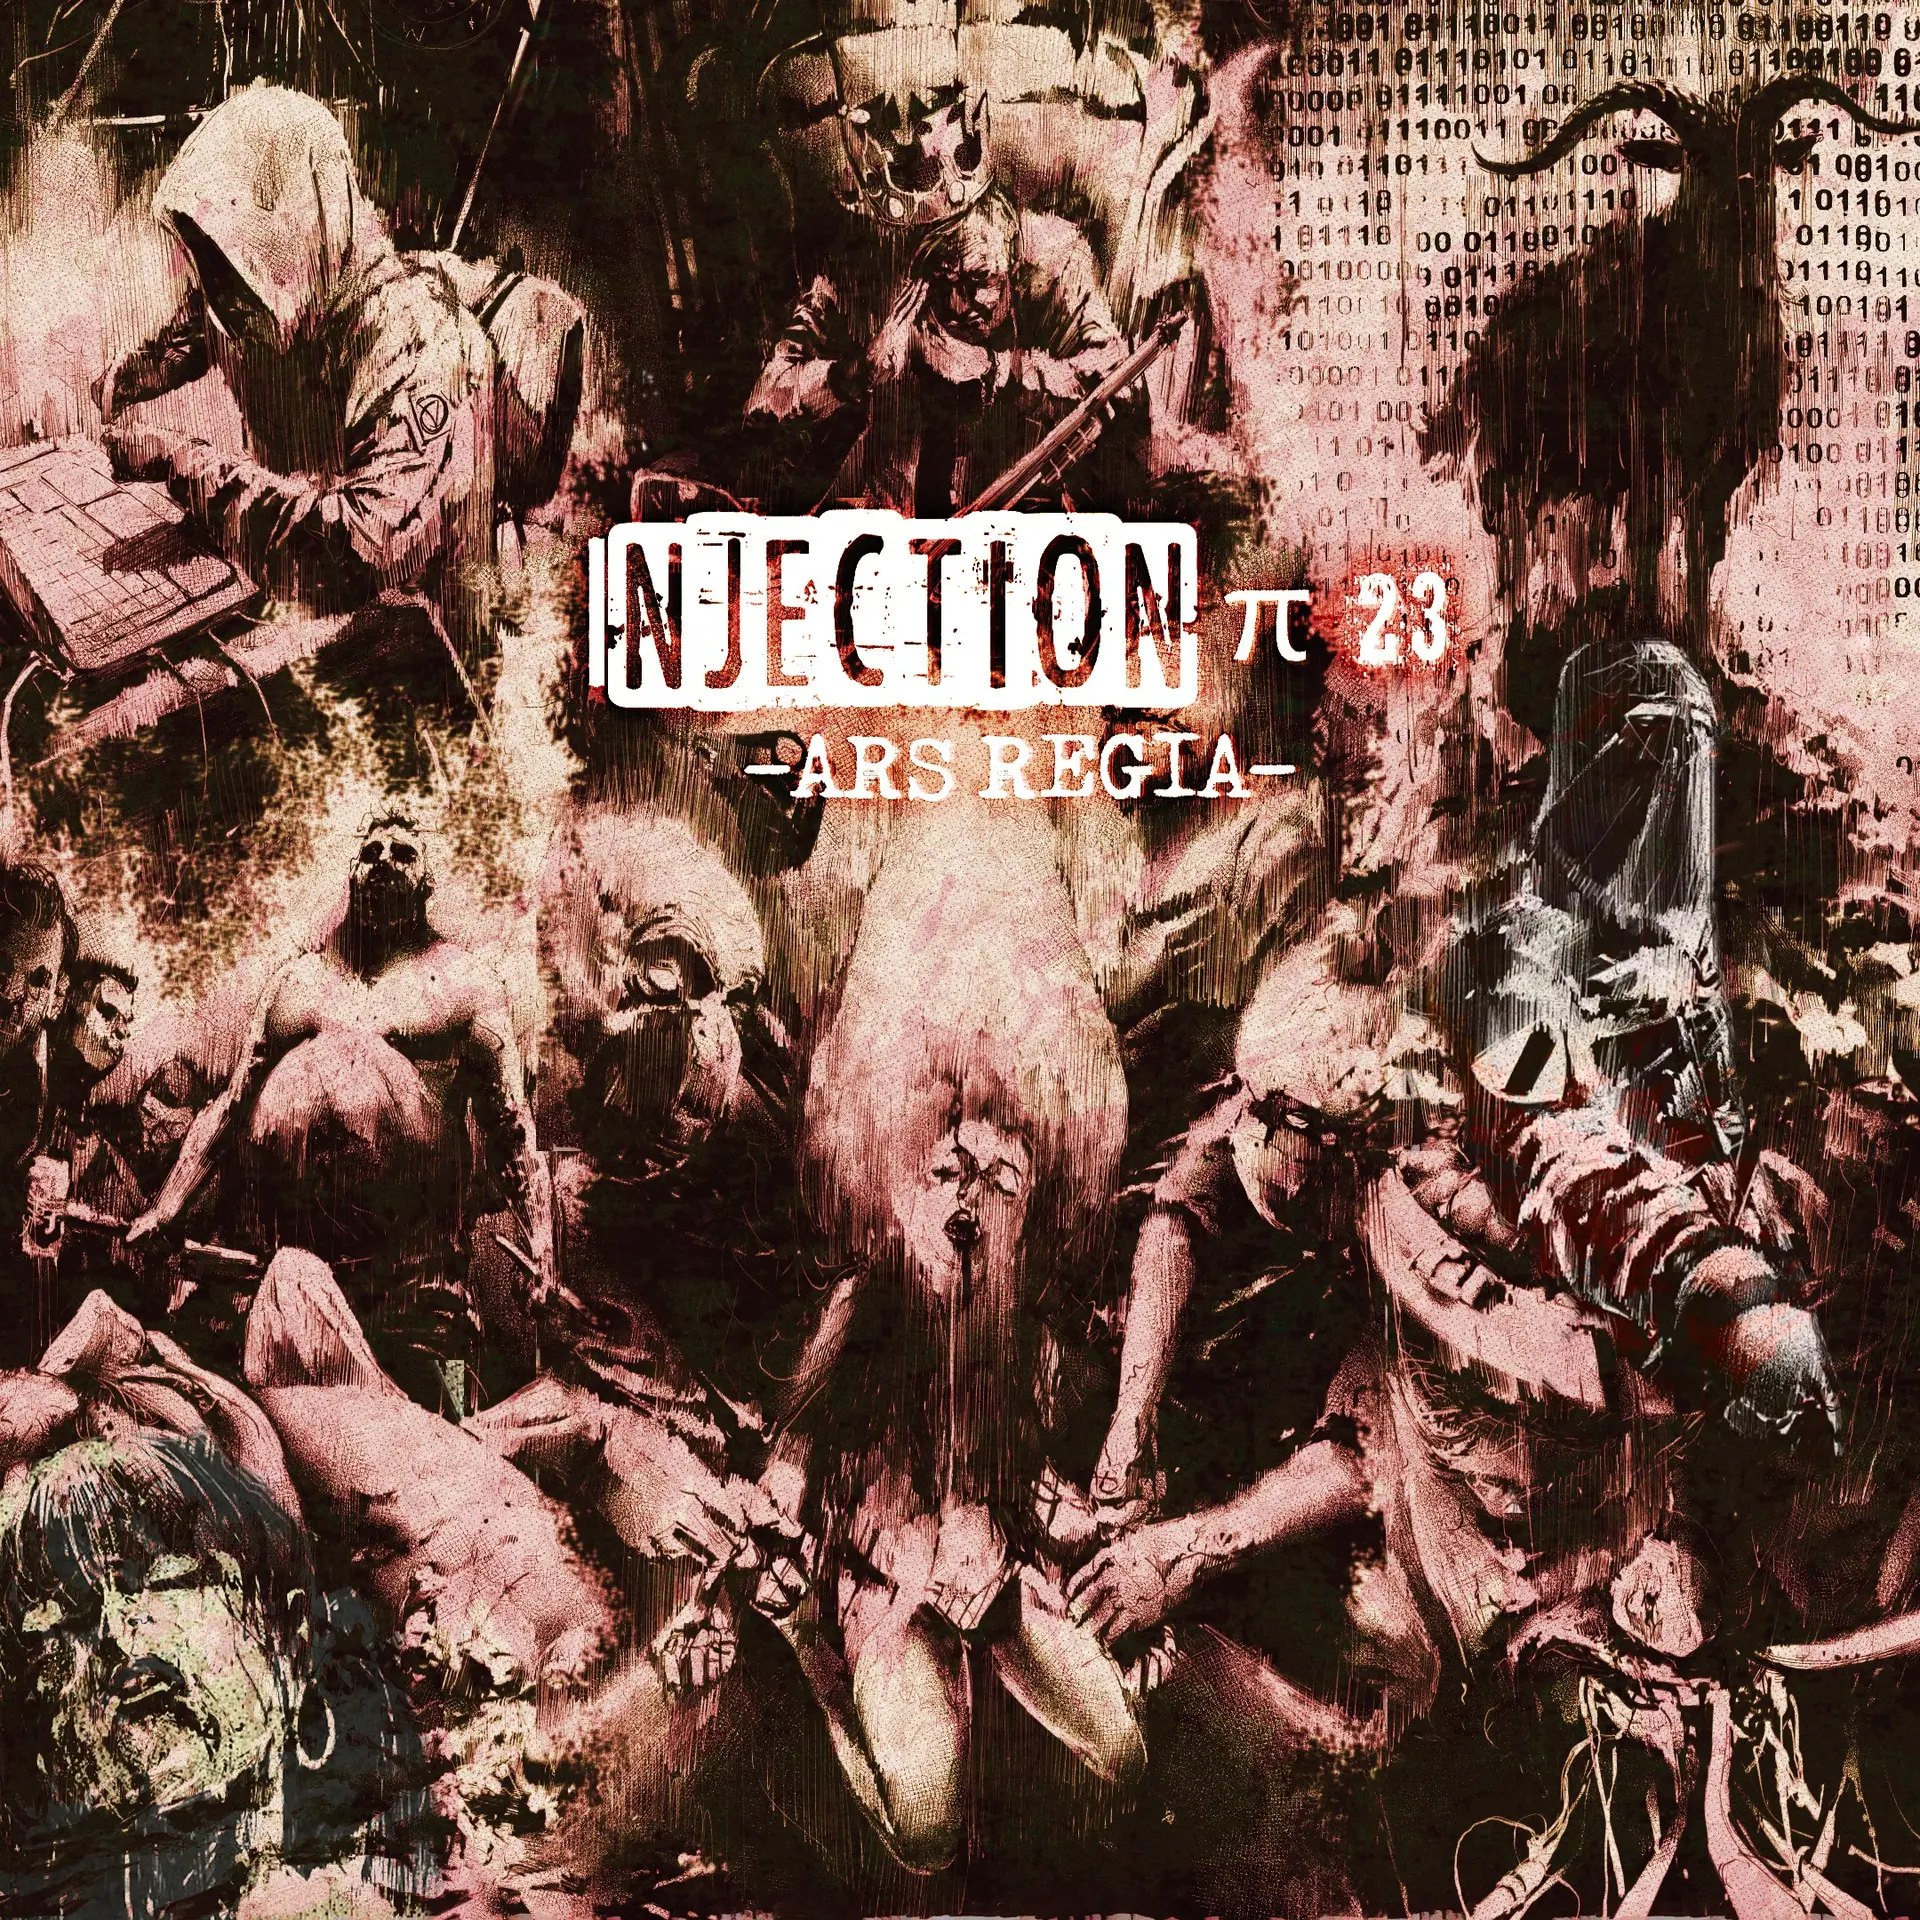 Injection π23 'Ars regia' (Xbox Games UK)